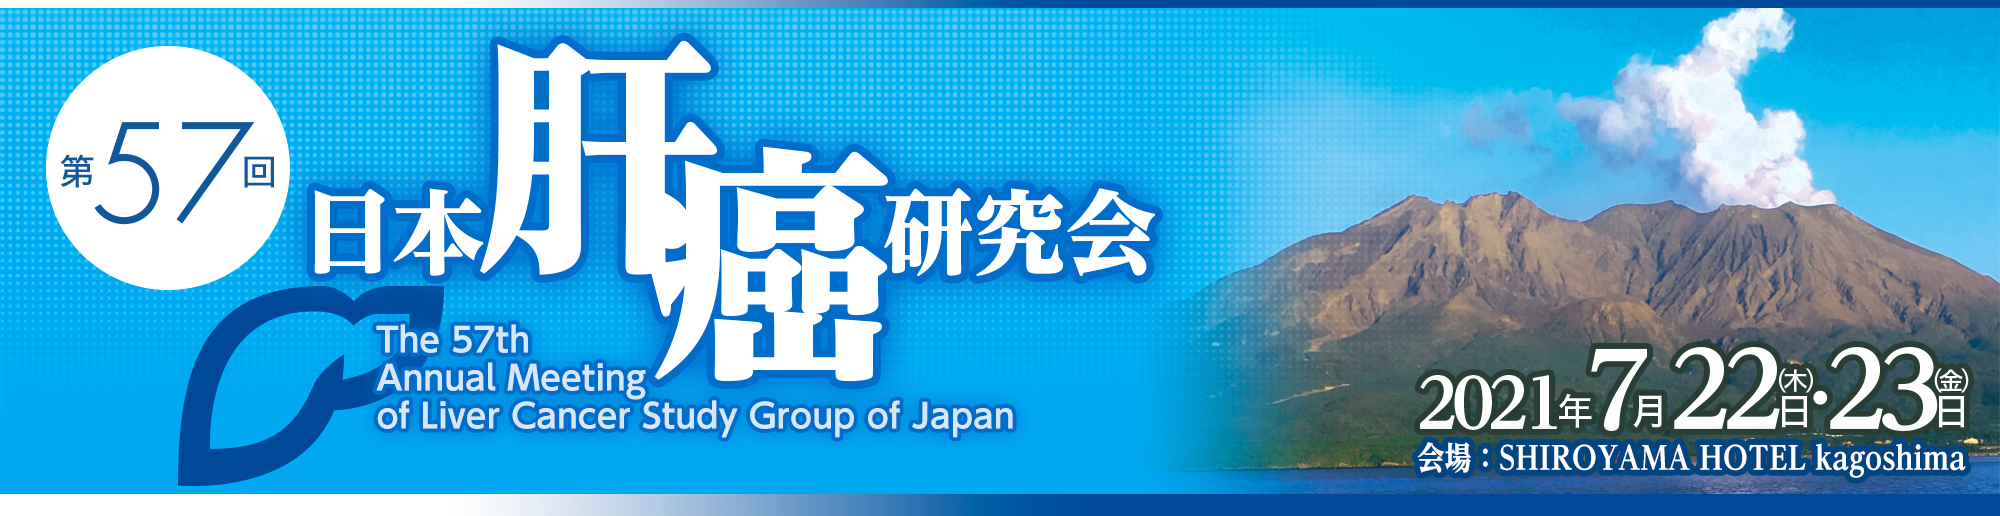 第57回日本肝癌研究会 The 57th Annual Meeting of Liver Cancer Study Group of Japan2021年7月22日（木）～23日（金） 会場：SHIROYAMA HOTEL kagoshima